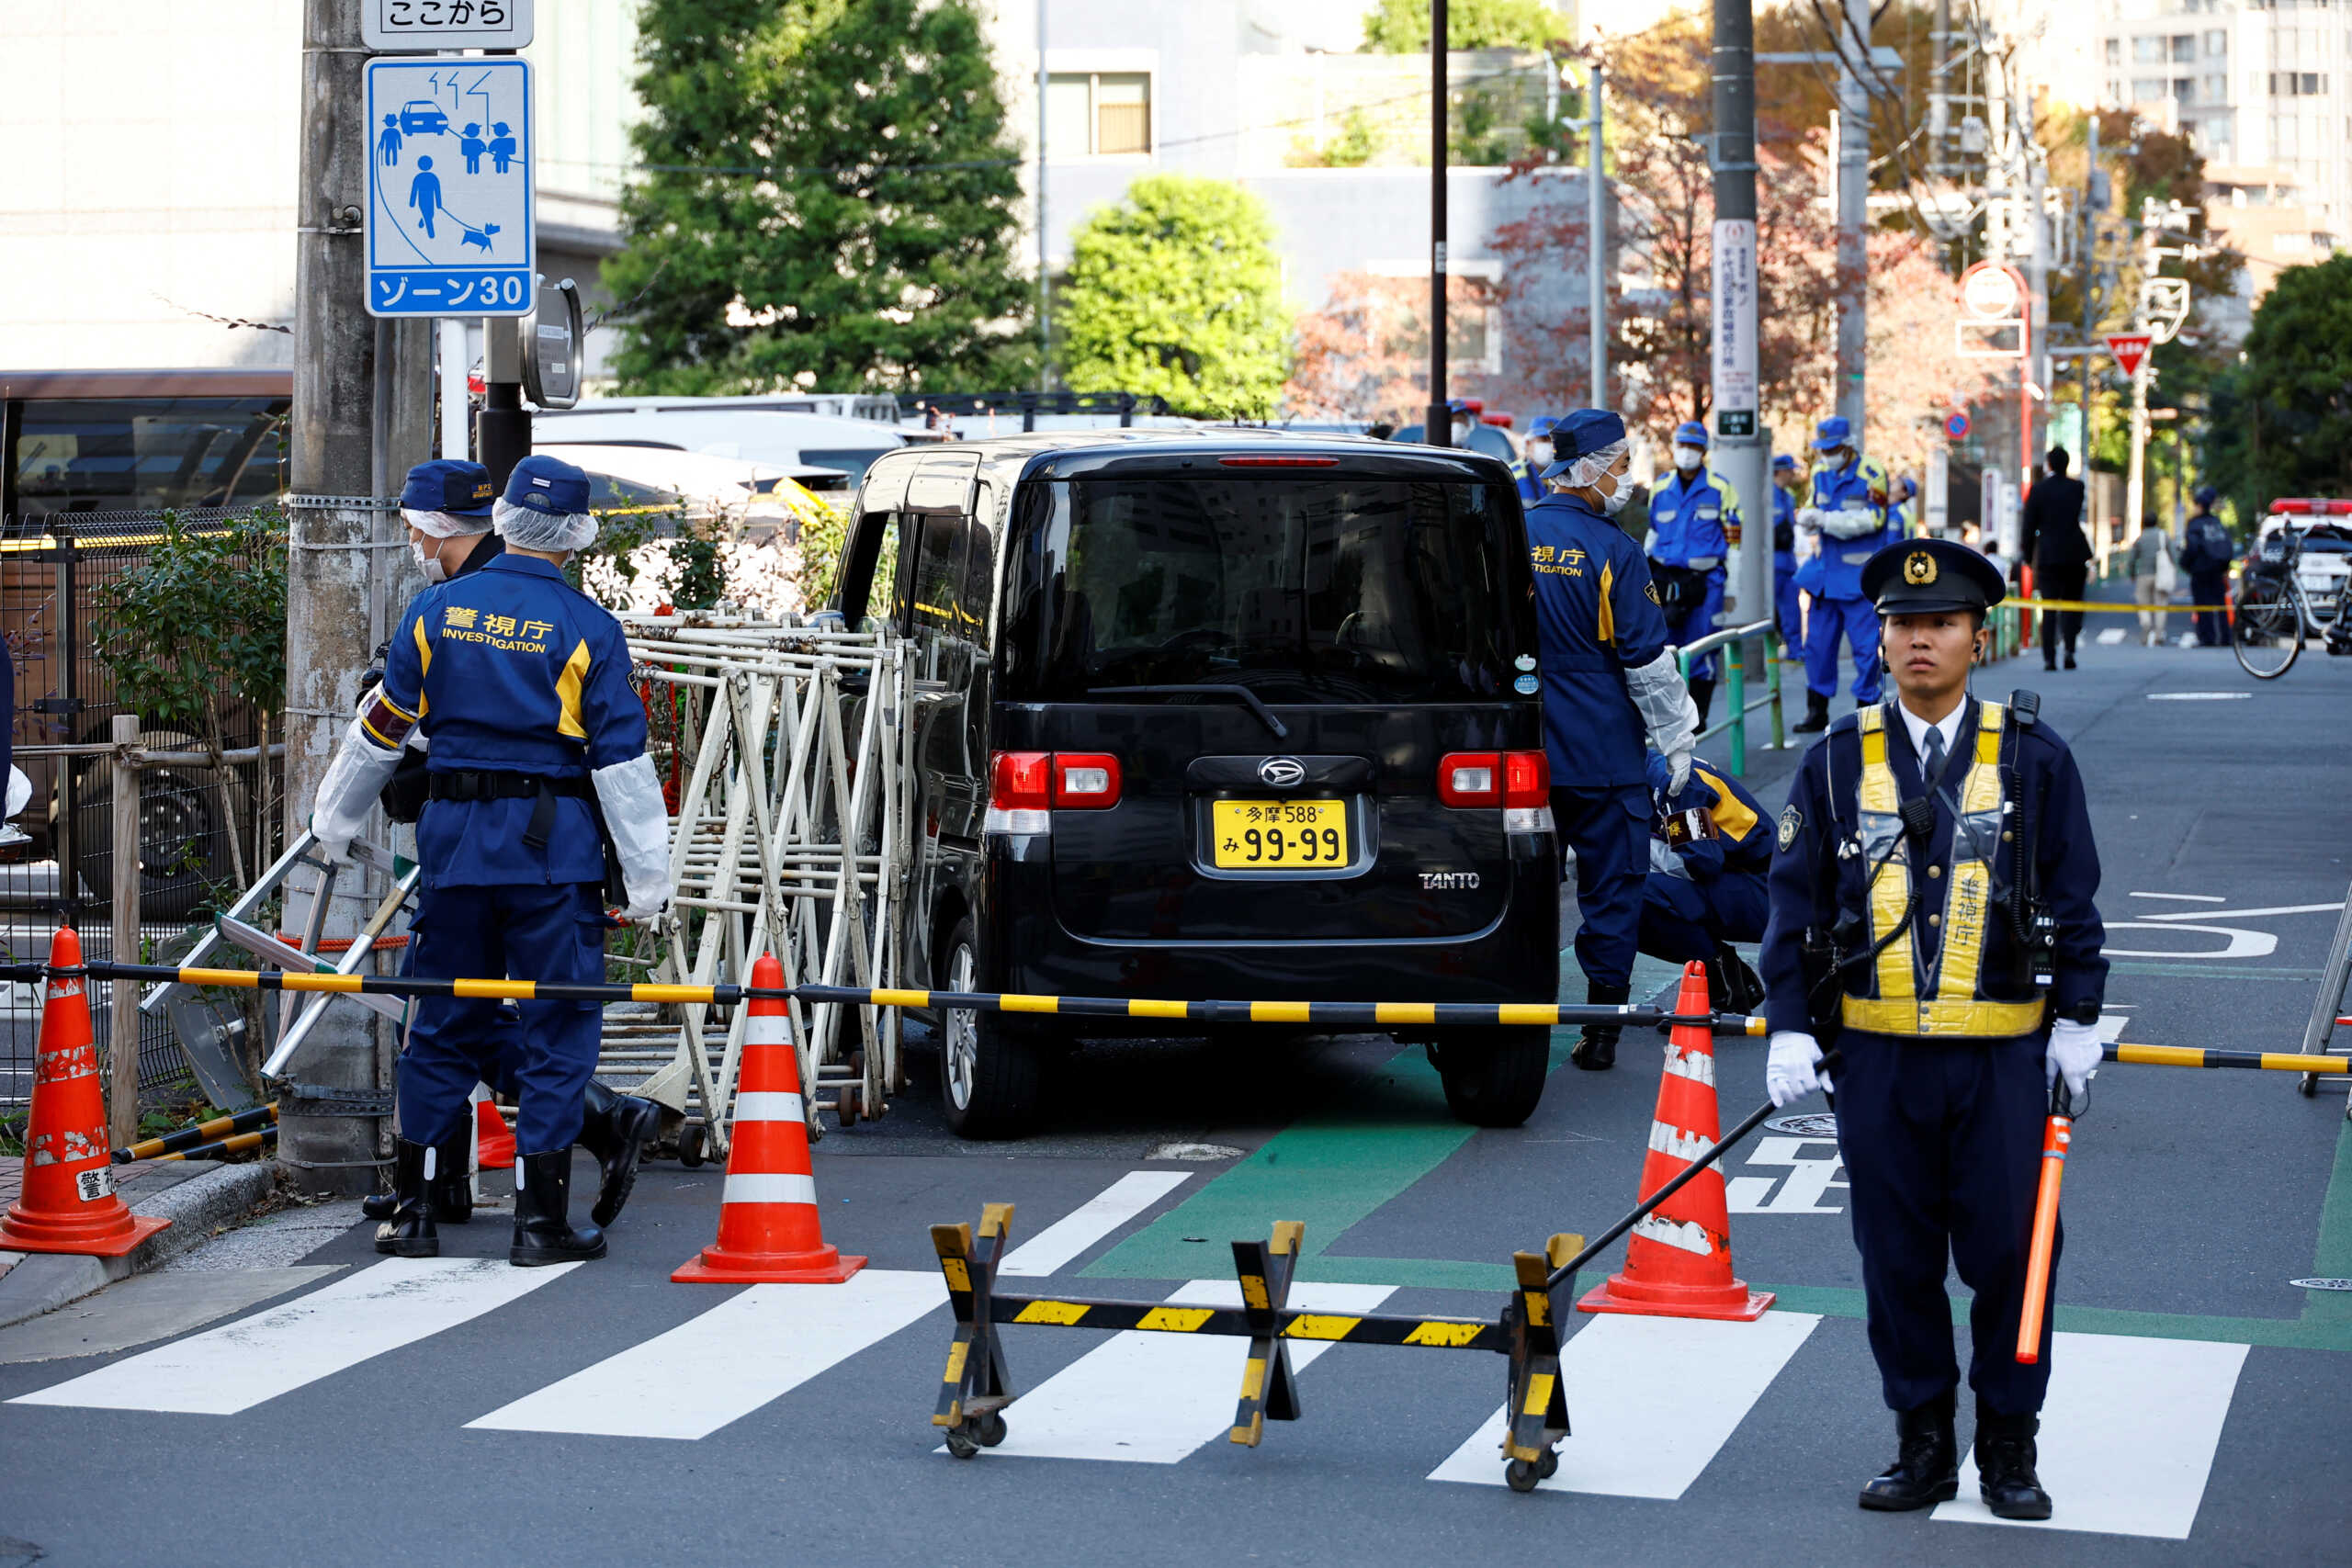 Ιαπωνία: Αυτοκίνητο έπεσε πάνω σε μπάρα κοντά στην Ισραηλινή πρεσβεία στο Τόκιο – Τραυματίστηκε αστυνομικός